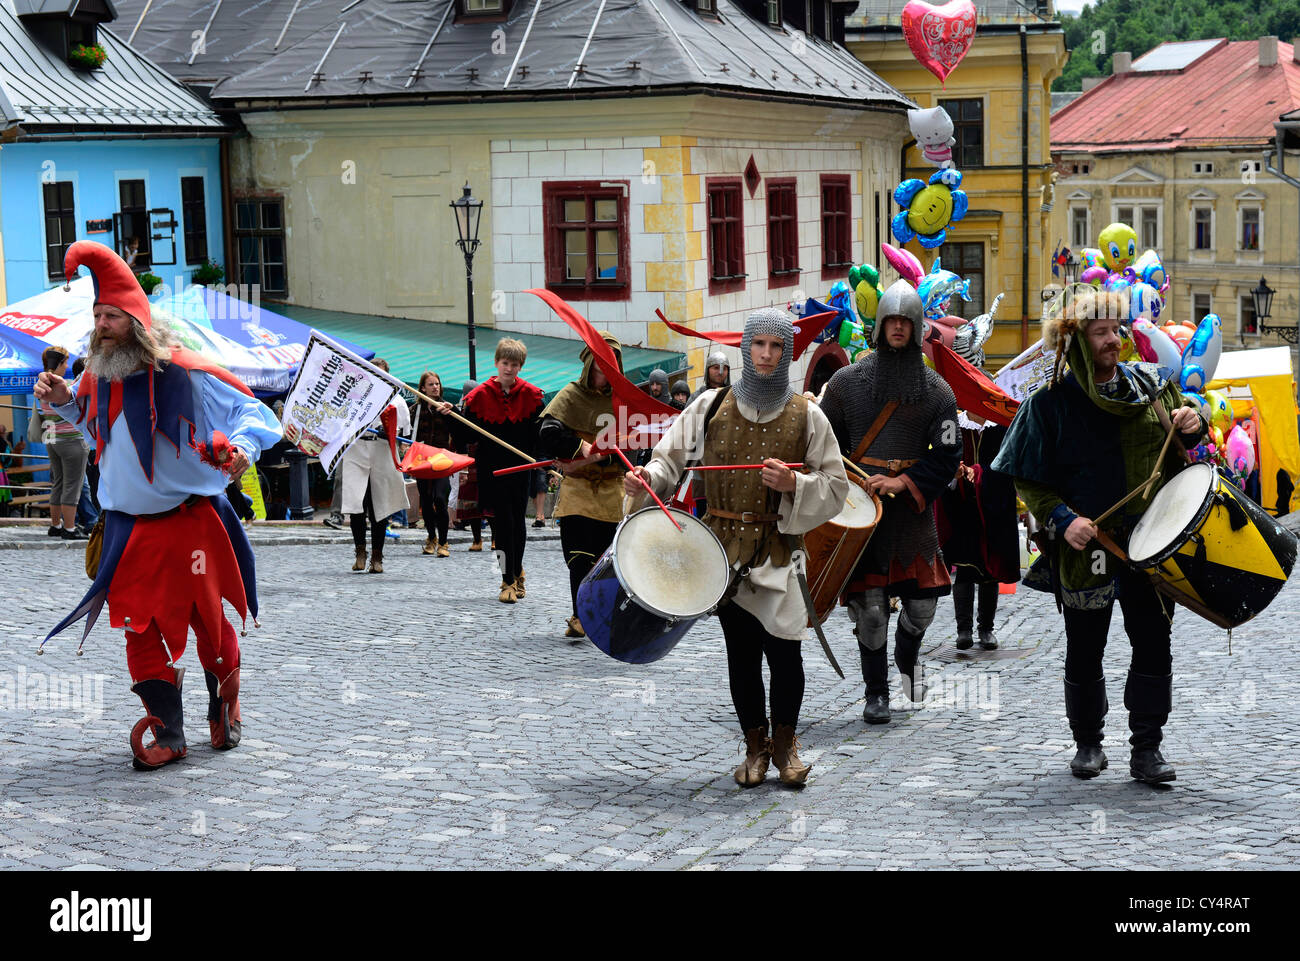 A medieval festival in Banska Stiavnica in Slovakia. Stock Photo